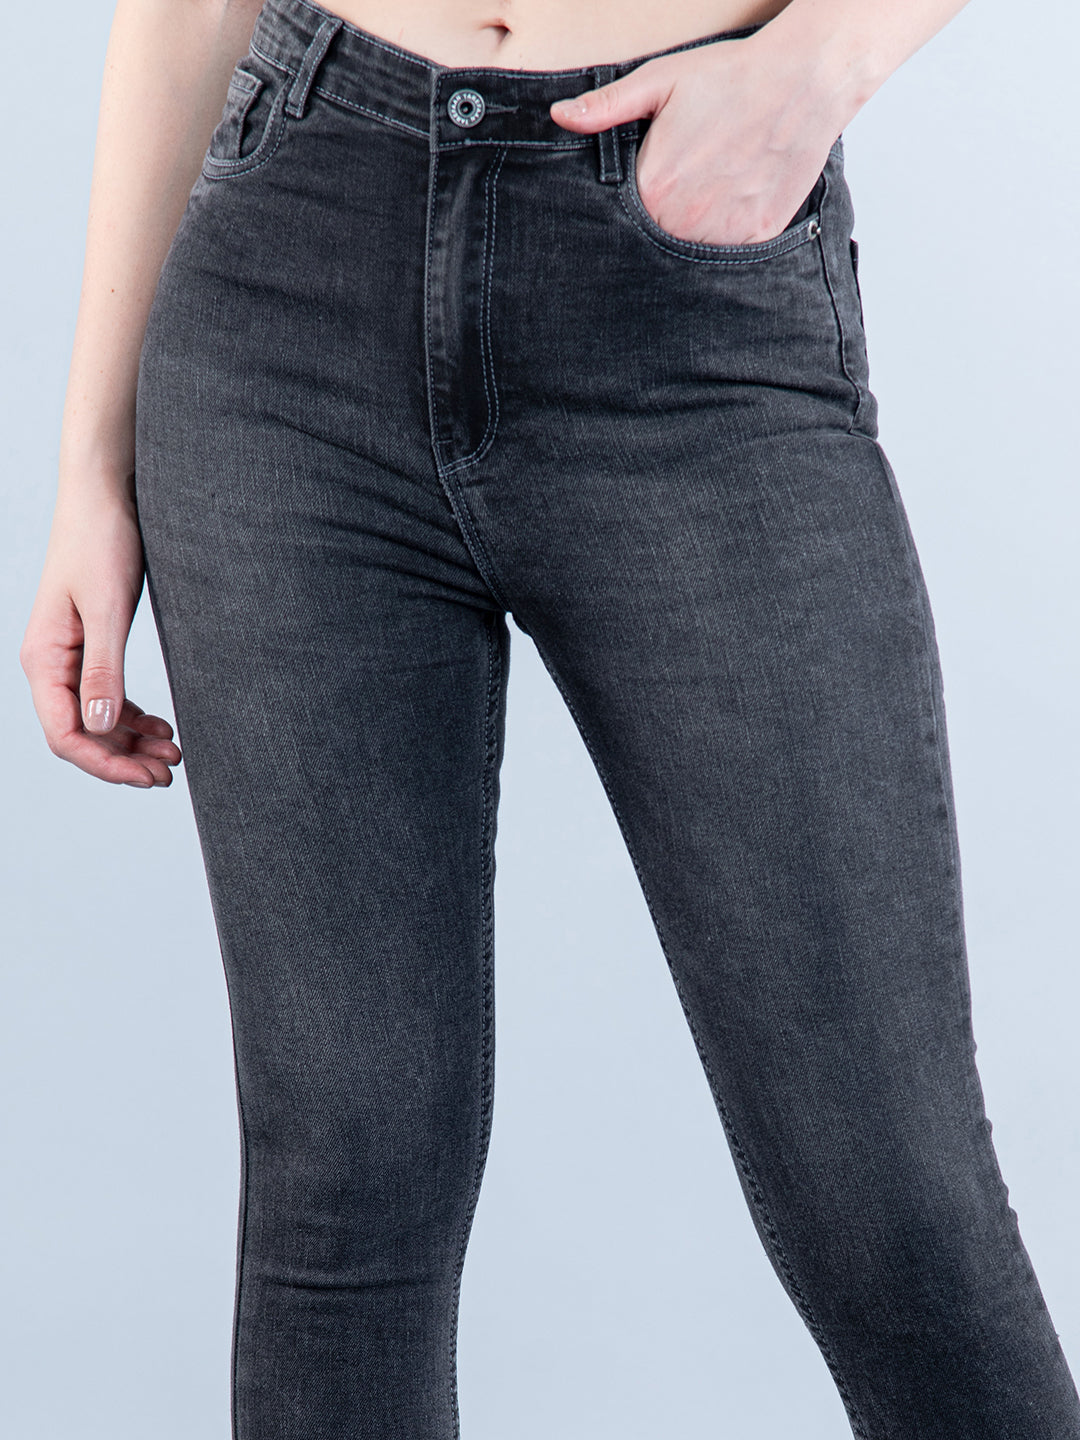 Women's Jeans | Denim Jeans For Women | PrettyLittleThing